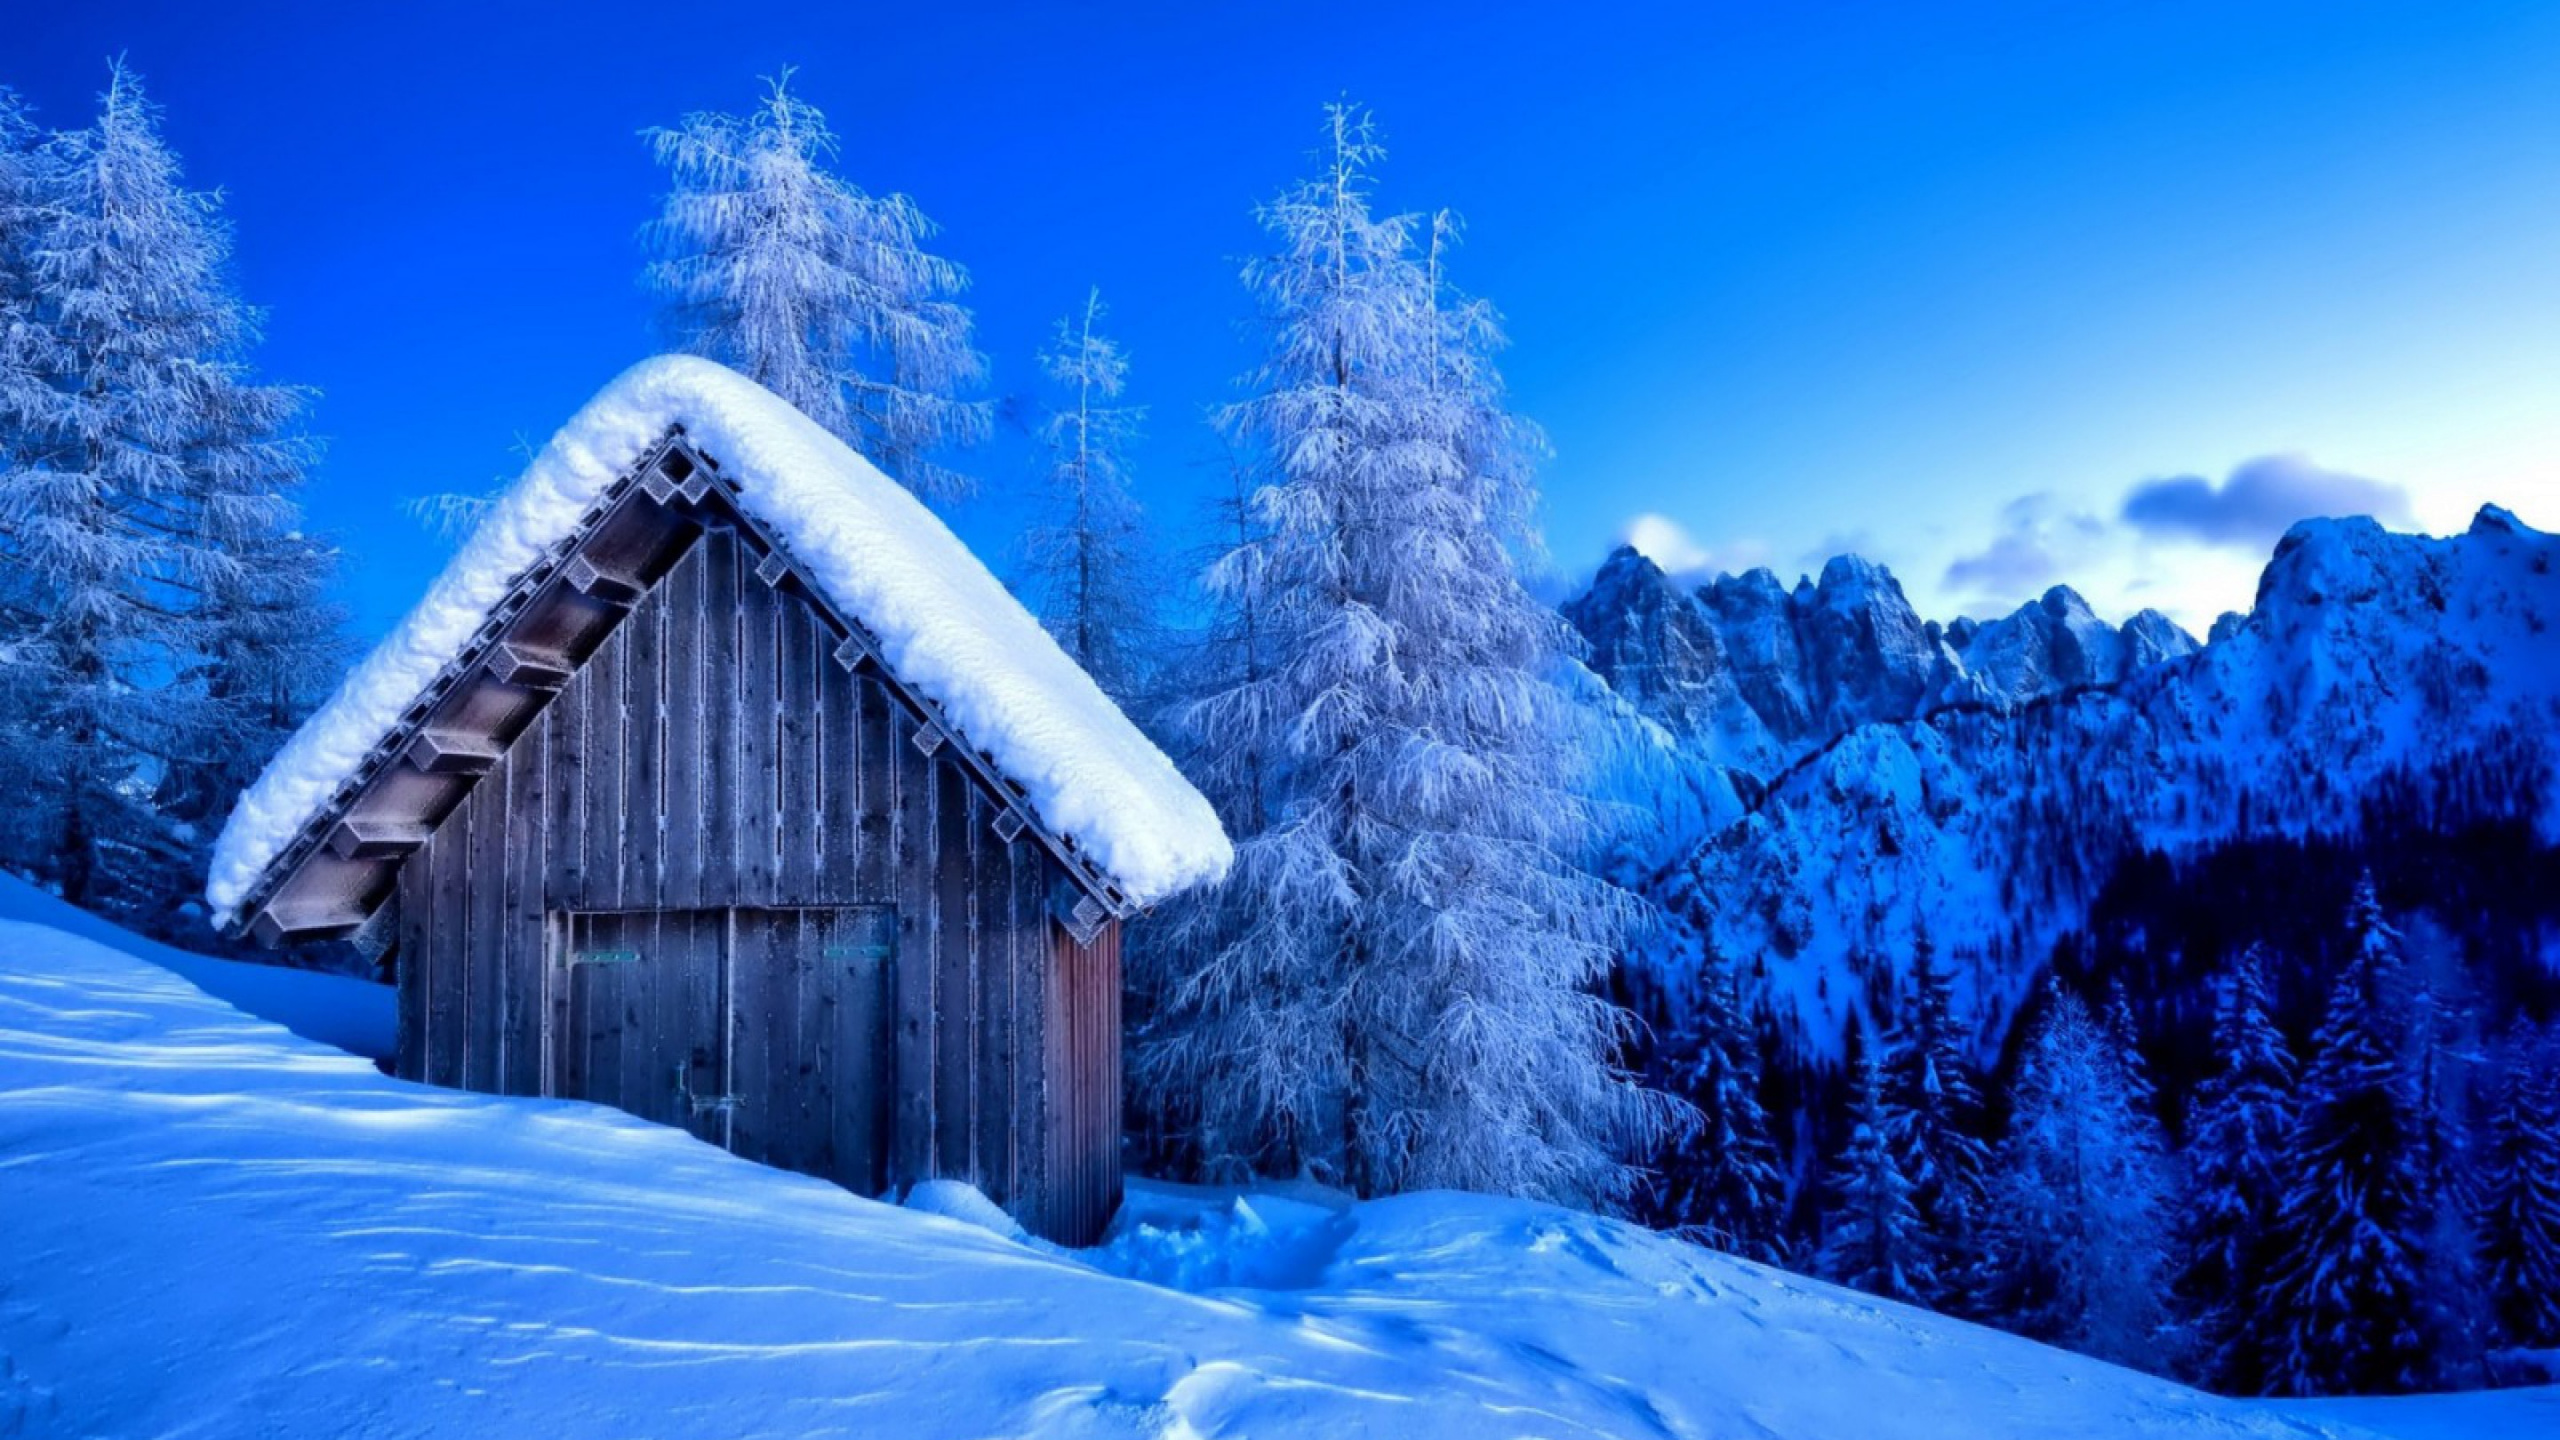 Casa de Madera Marrón Cerca de Pinos Cubiertos de Nieve Bajo un Cielo Azul Durante el Día. Wallpaper in 2560x1440 Resolution